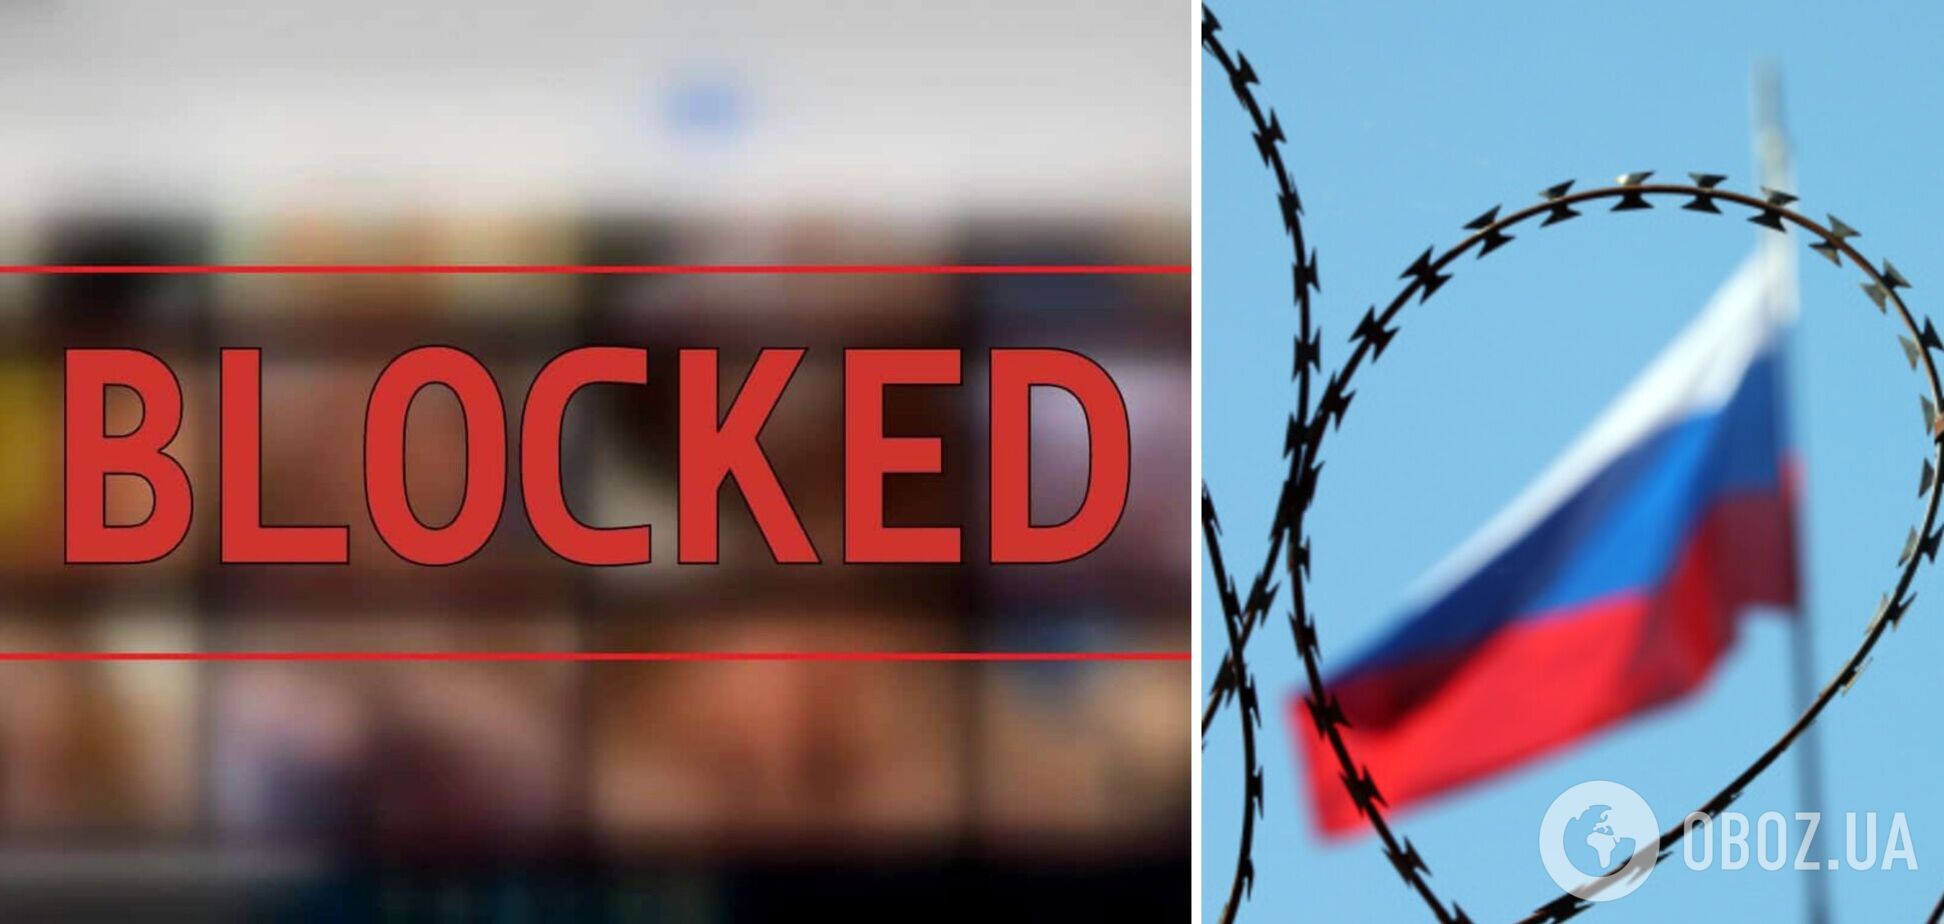 У Казахстані заблокували російський сайт Sputnik24: що відбувається